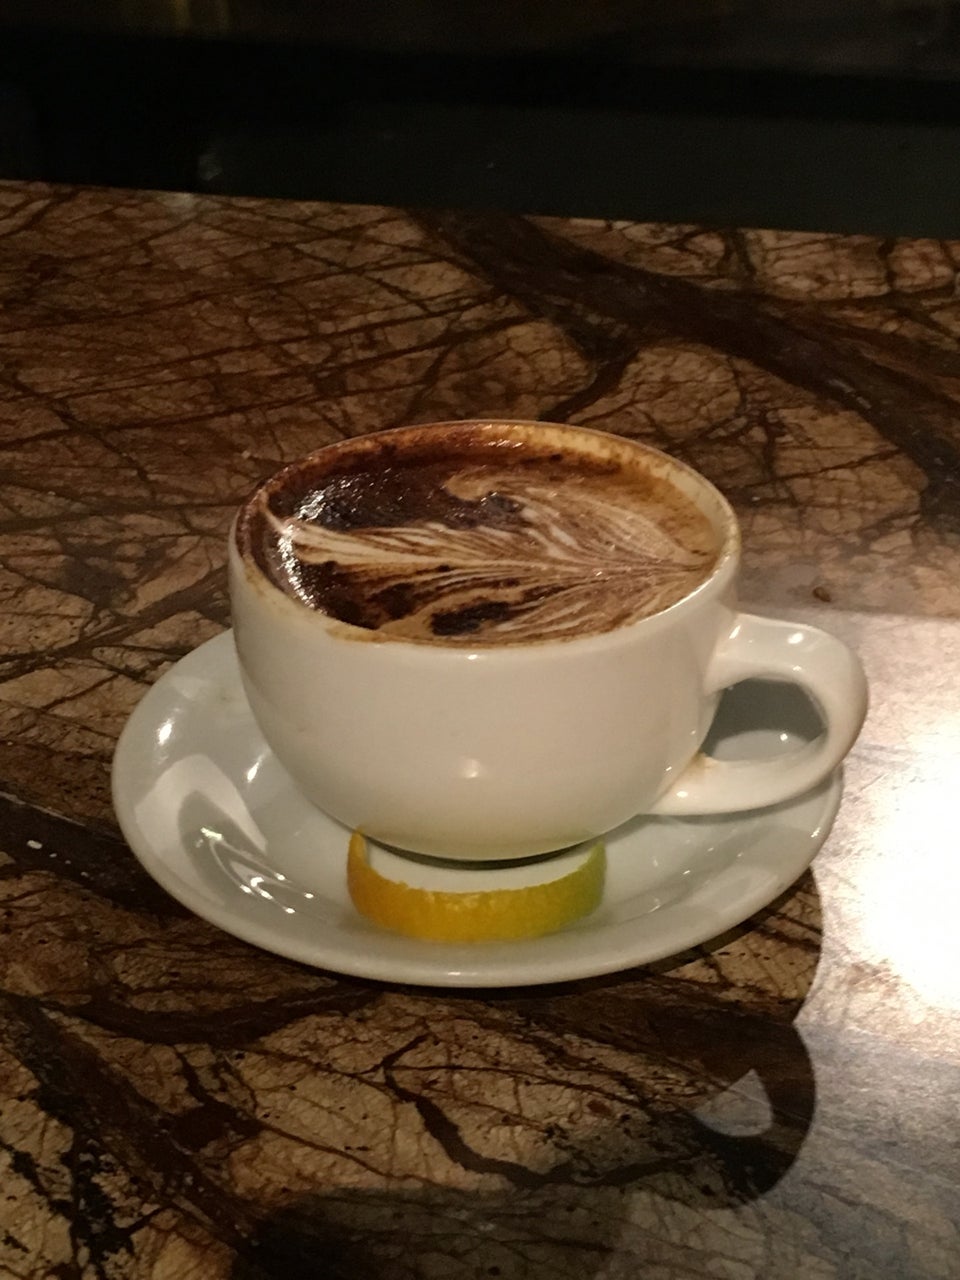 Photo of Vivace Espresso Bar